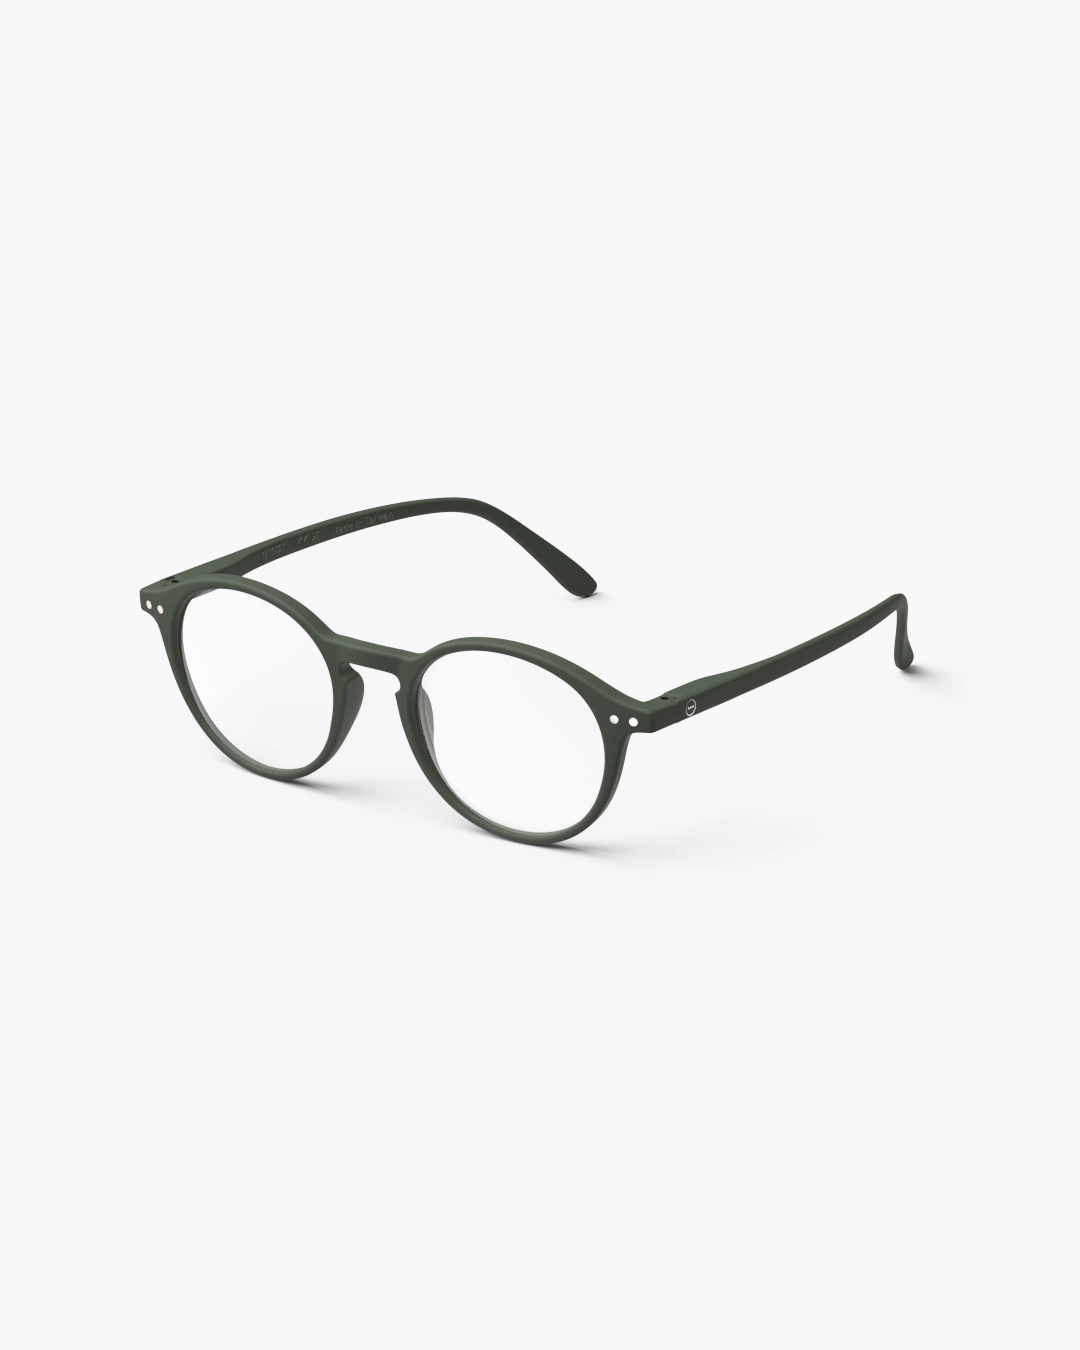 IZIPIZI #D Khaki Green Reading Glasses